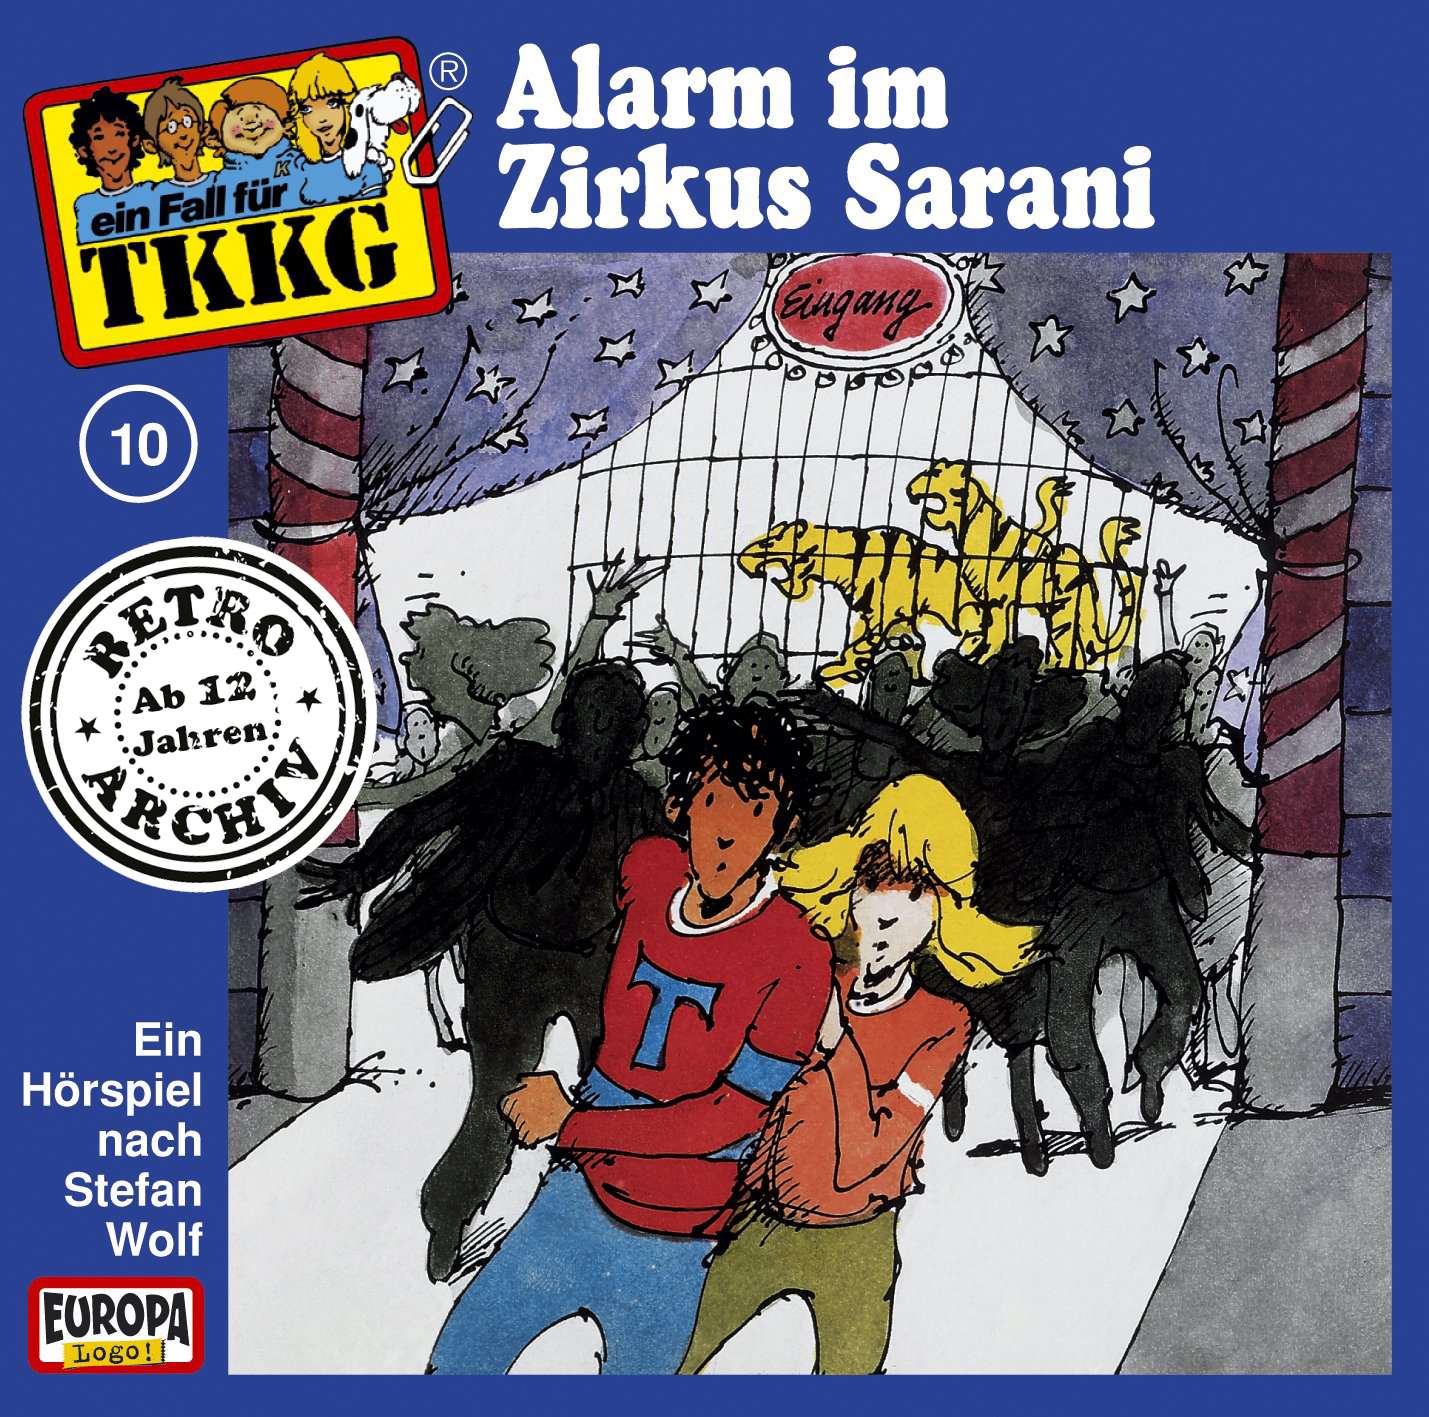 TKKG Retro-Archiv: Alarm im Zirkus Sarani